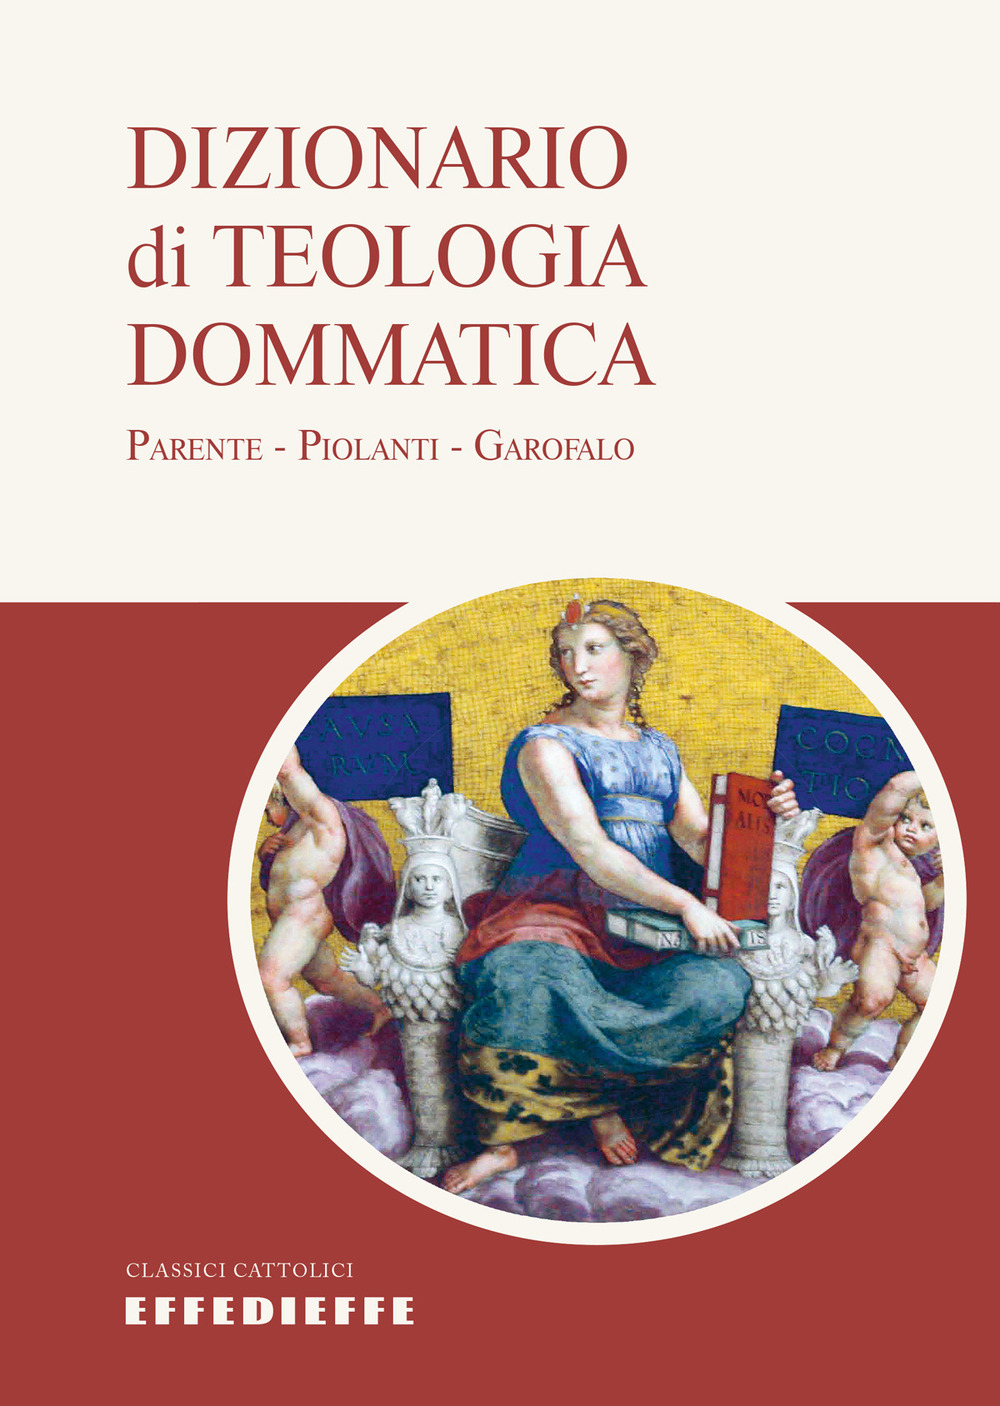 Image of Dizionario di teologia dommatica